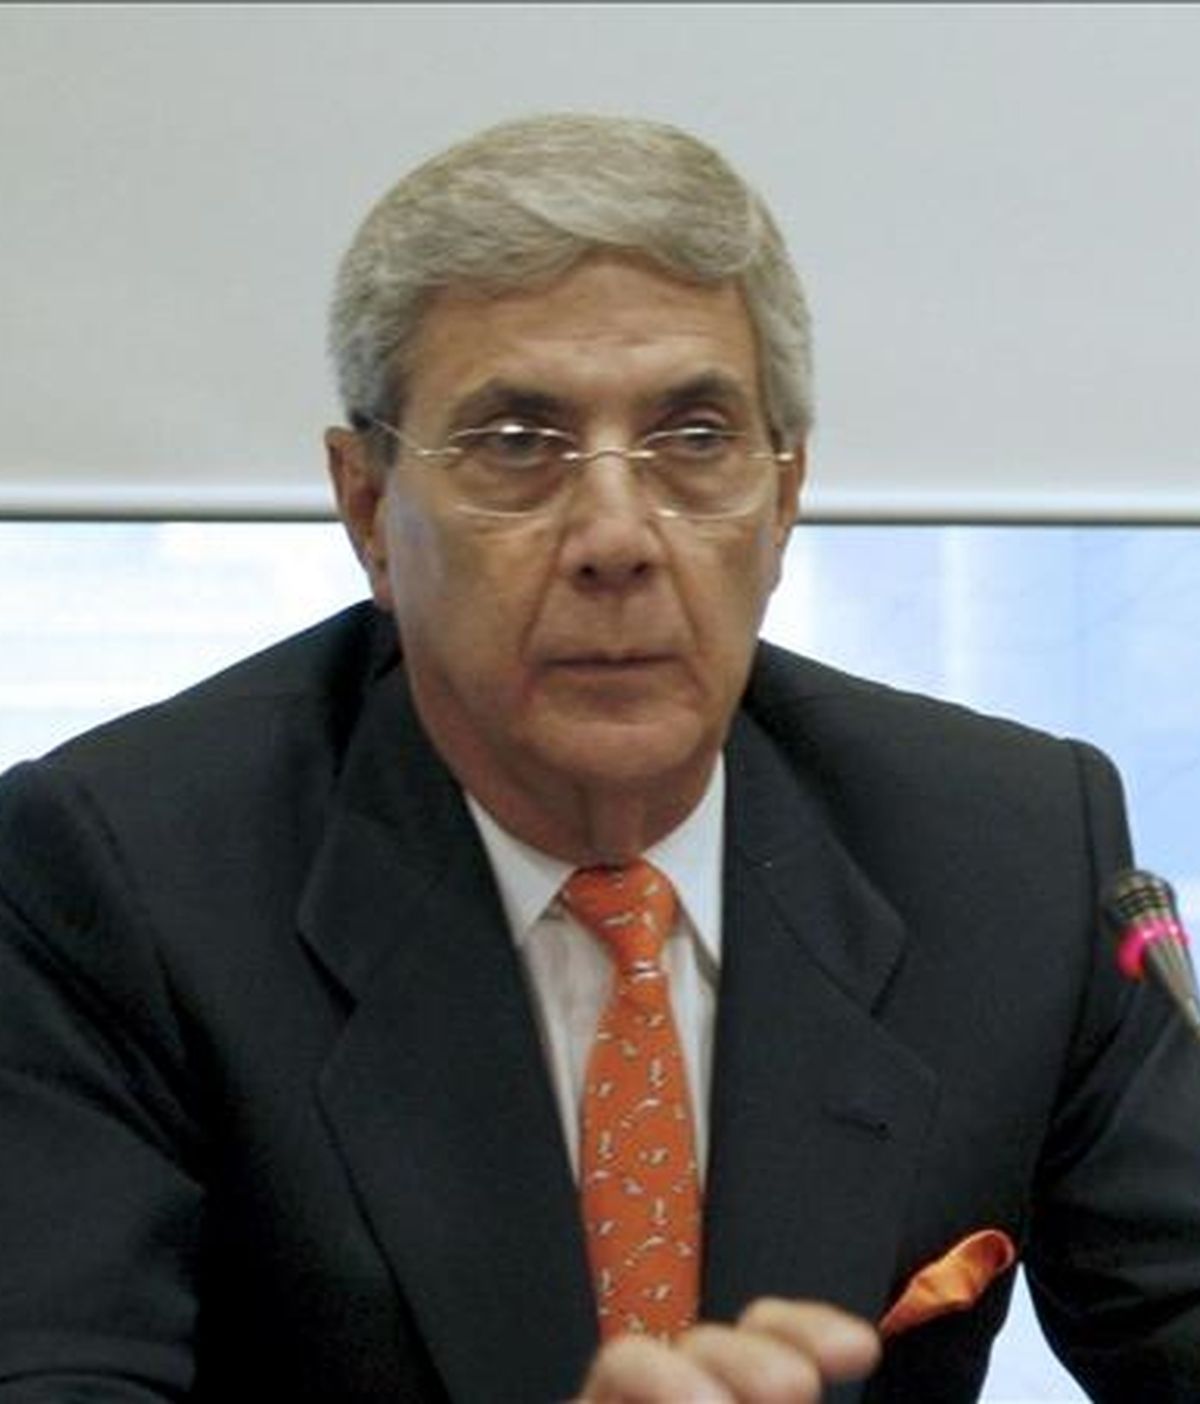 El Presidente de Jazztel, Leopoldo Fernandez Pujals. EFE/Archivo